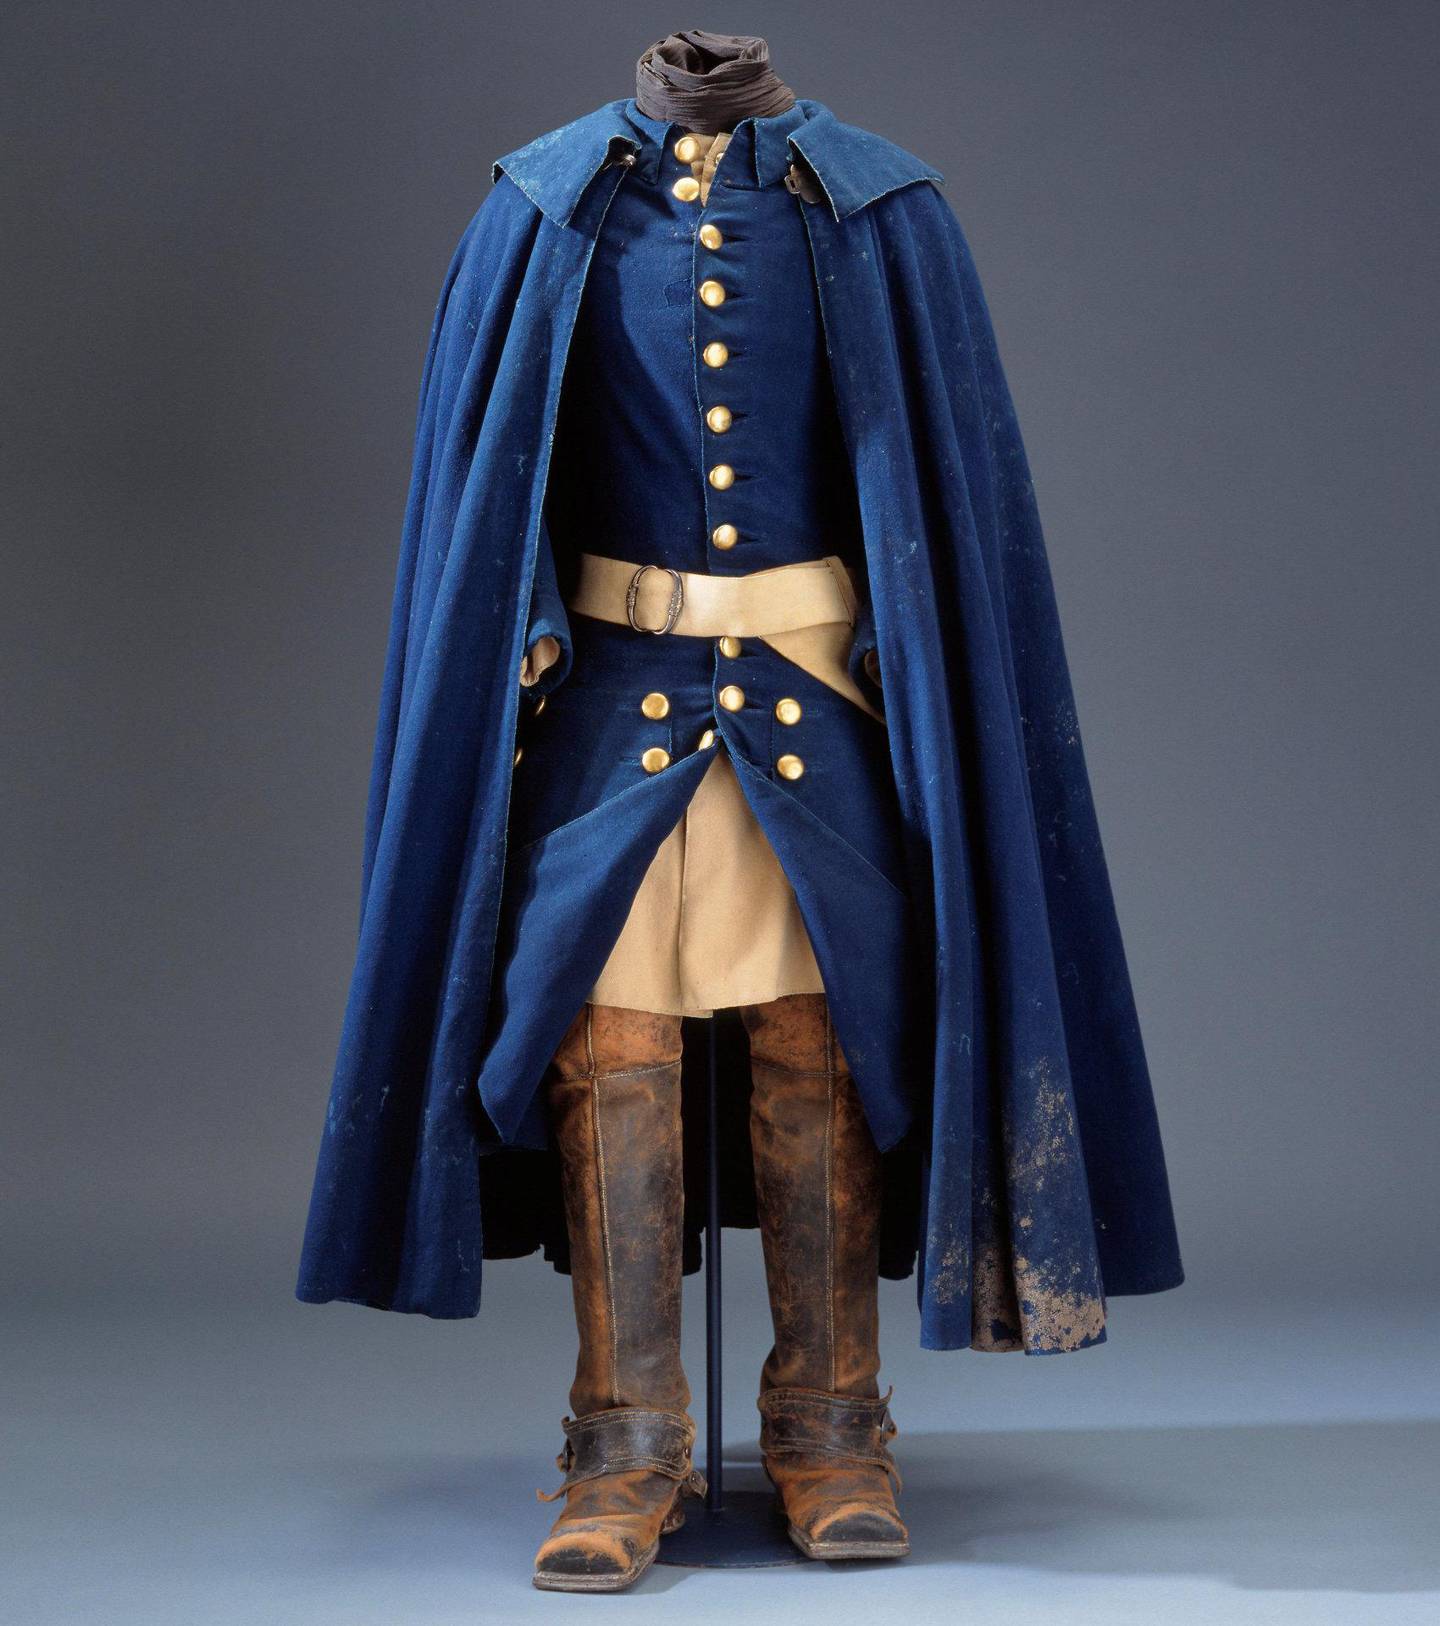 Karl XII kledde seg nøkternt, nærmest som en menig soldat. Kongen skiftet uniform samme dag som han ble drept, etter å ha båret den forrige i en knapp uke. Fortsatt ser man spor av norsk gjørme nederst på den blå kappen. FOTO: Livrust-kammaren